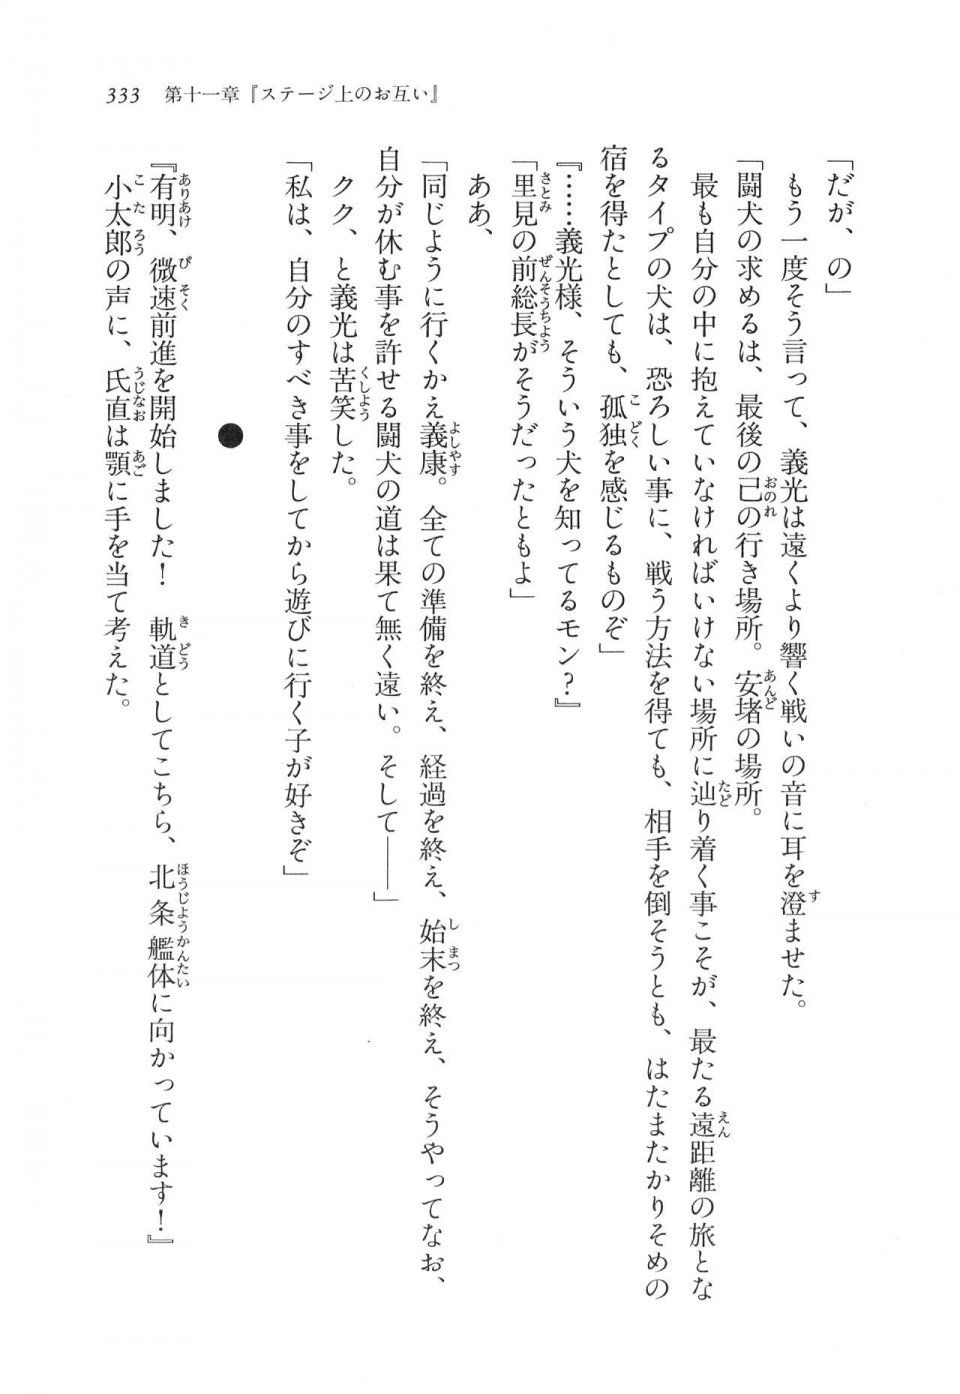 Kyoukai Senjou no Horizon LN Vol 11(5A) - Photo #333